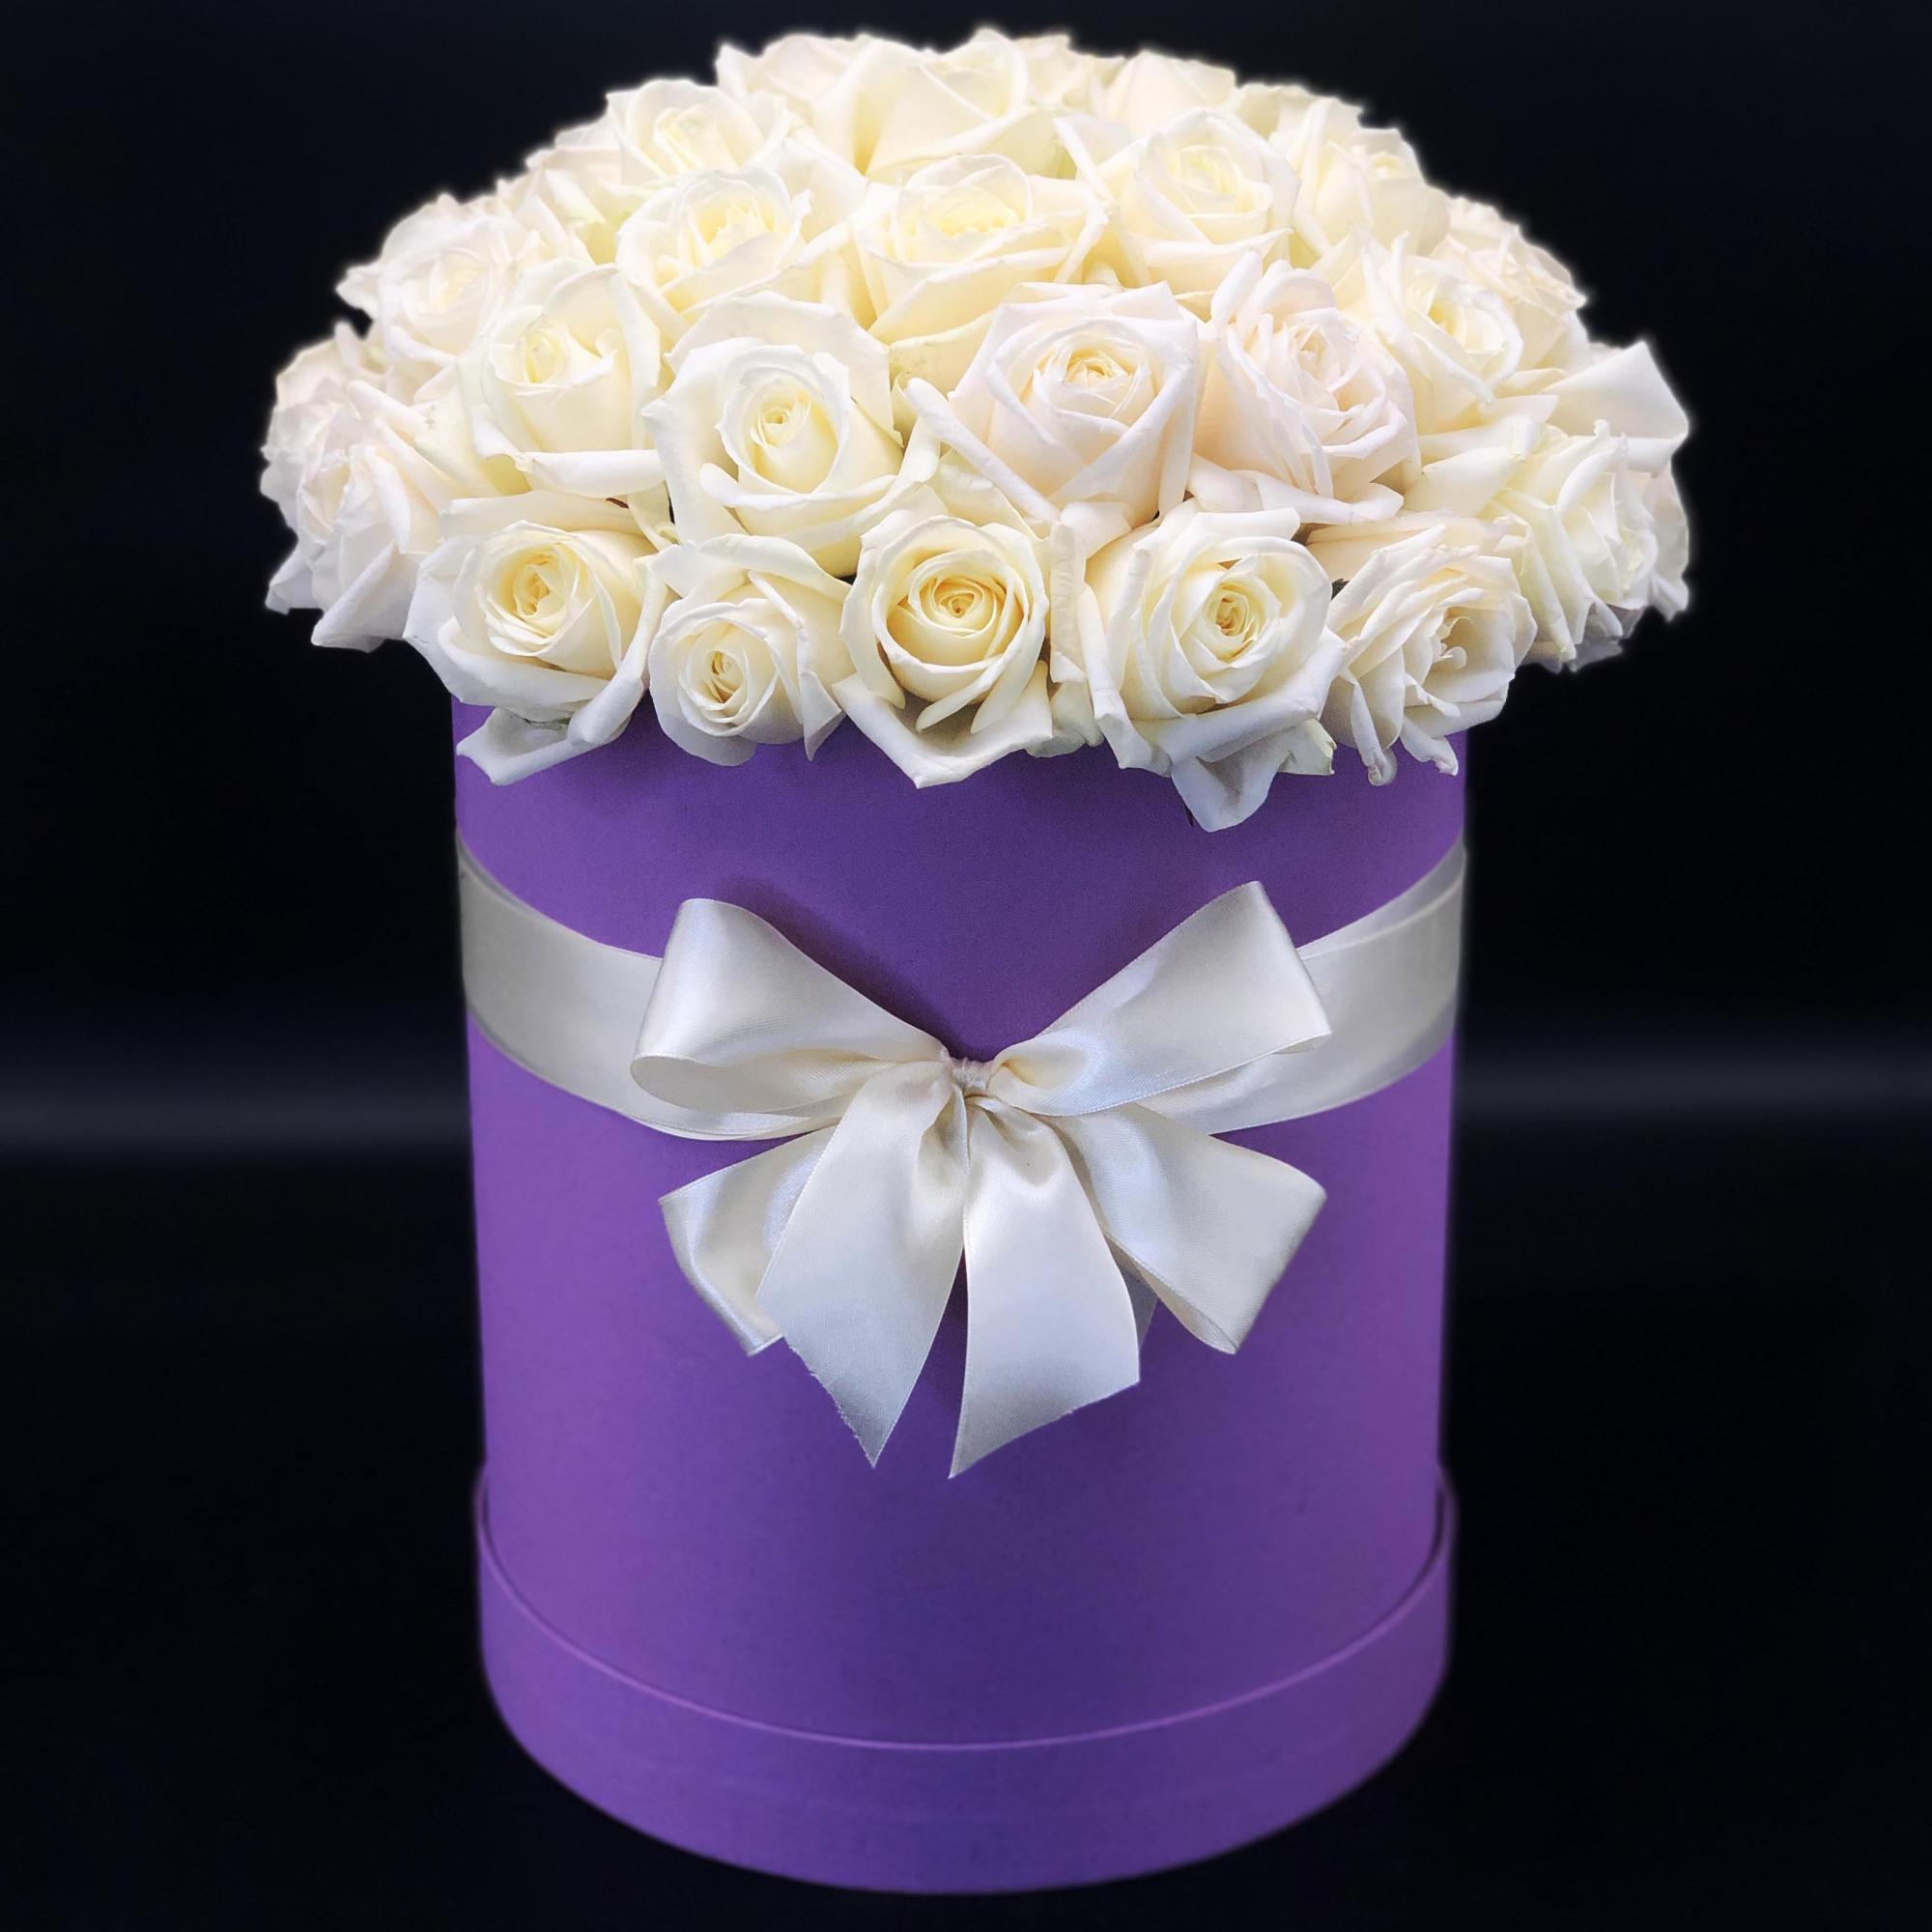  Флорист в Белек 29 белых роз в фиолетовой коробке